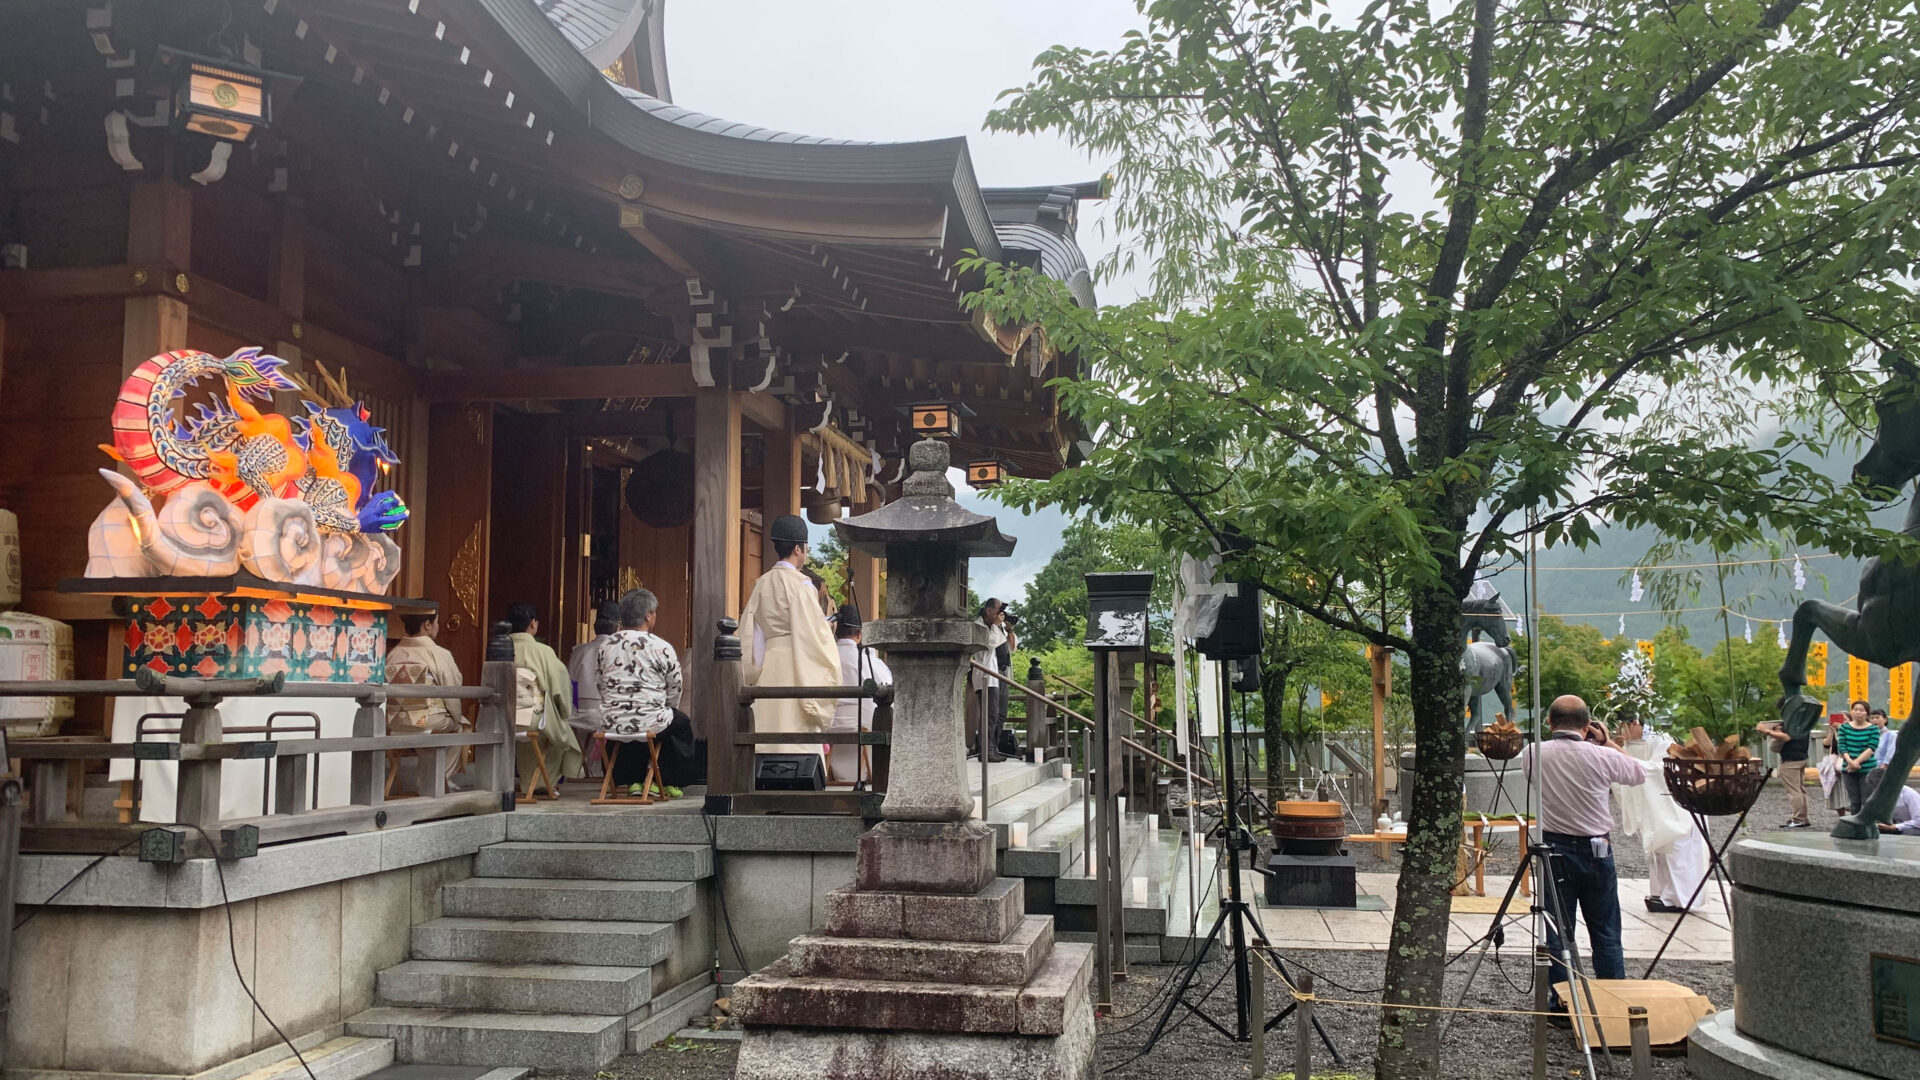 伊坂ダムを守る水神様を求めて奈良県・丹生川上神社へ三社参り